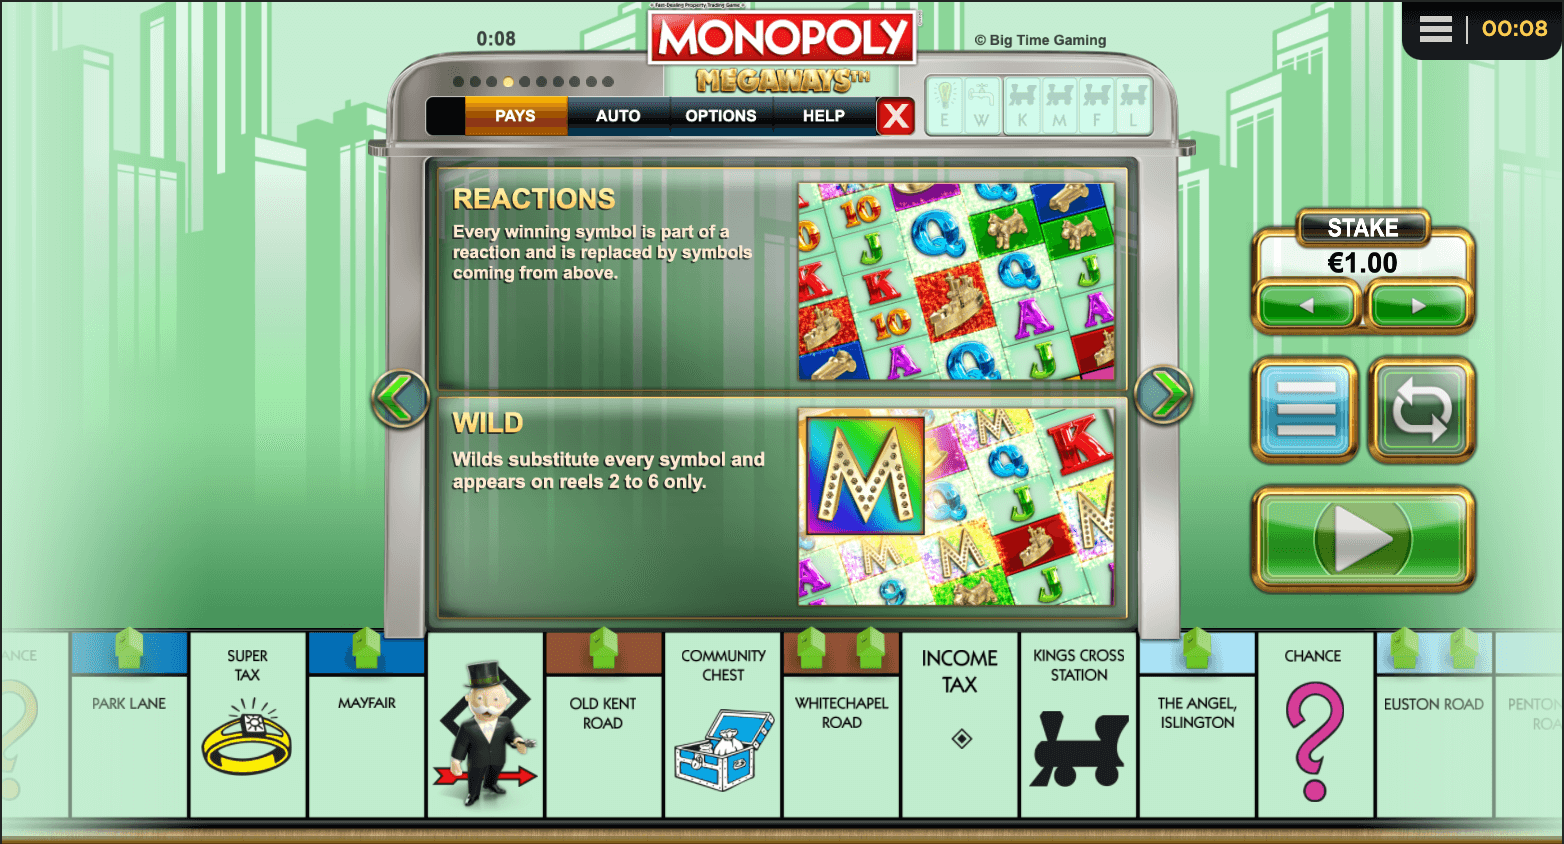 Monopoly Megaways Processo do jogo